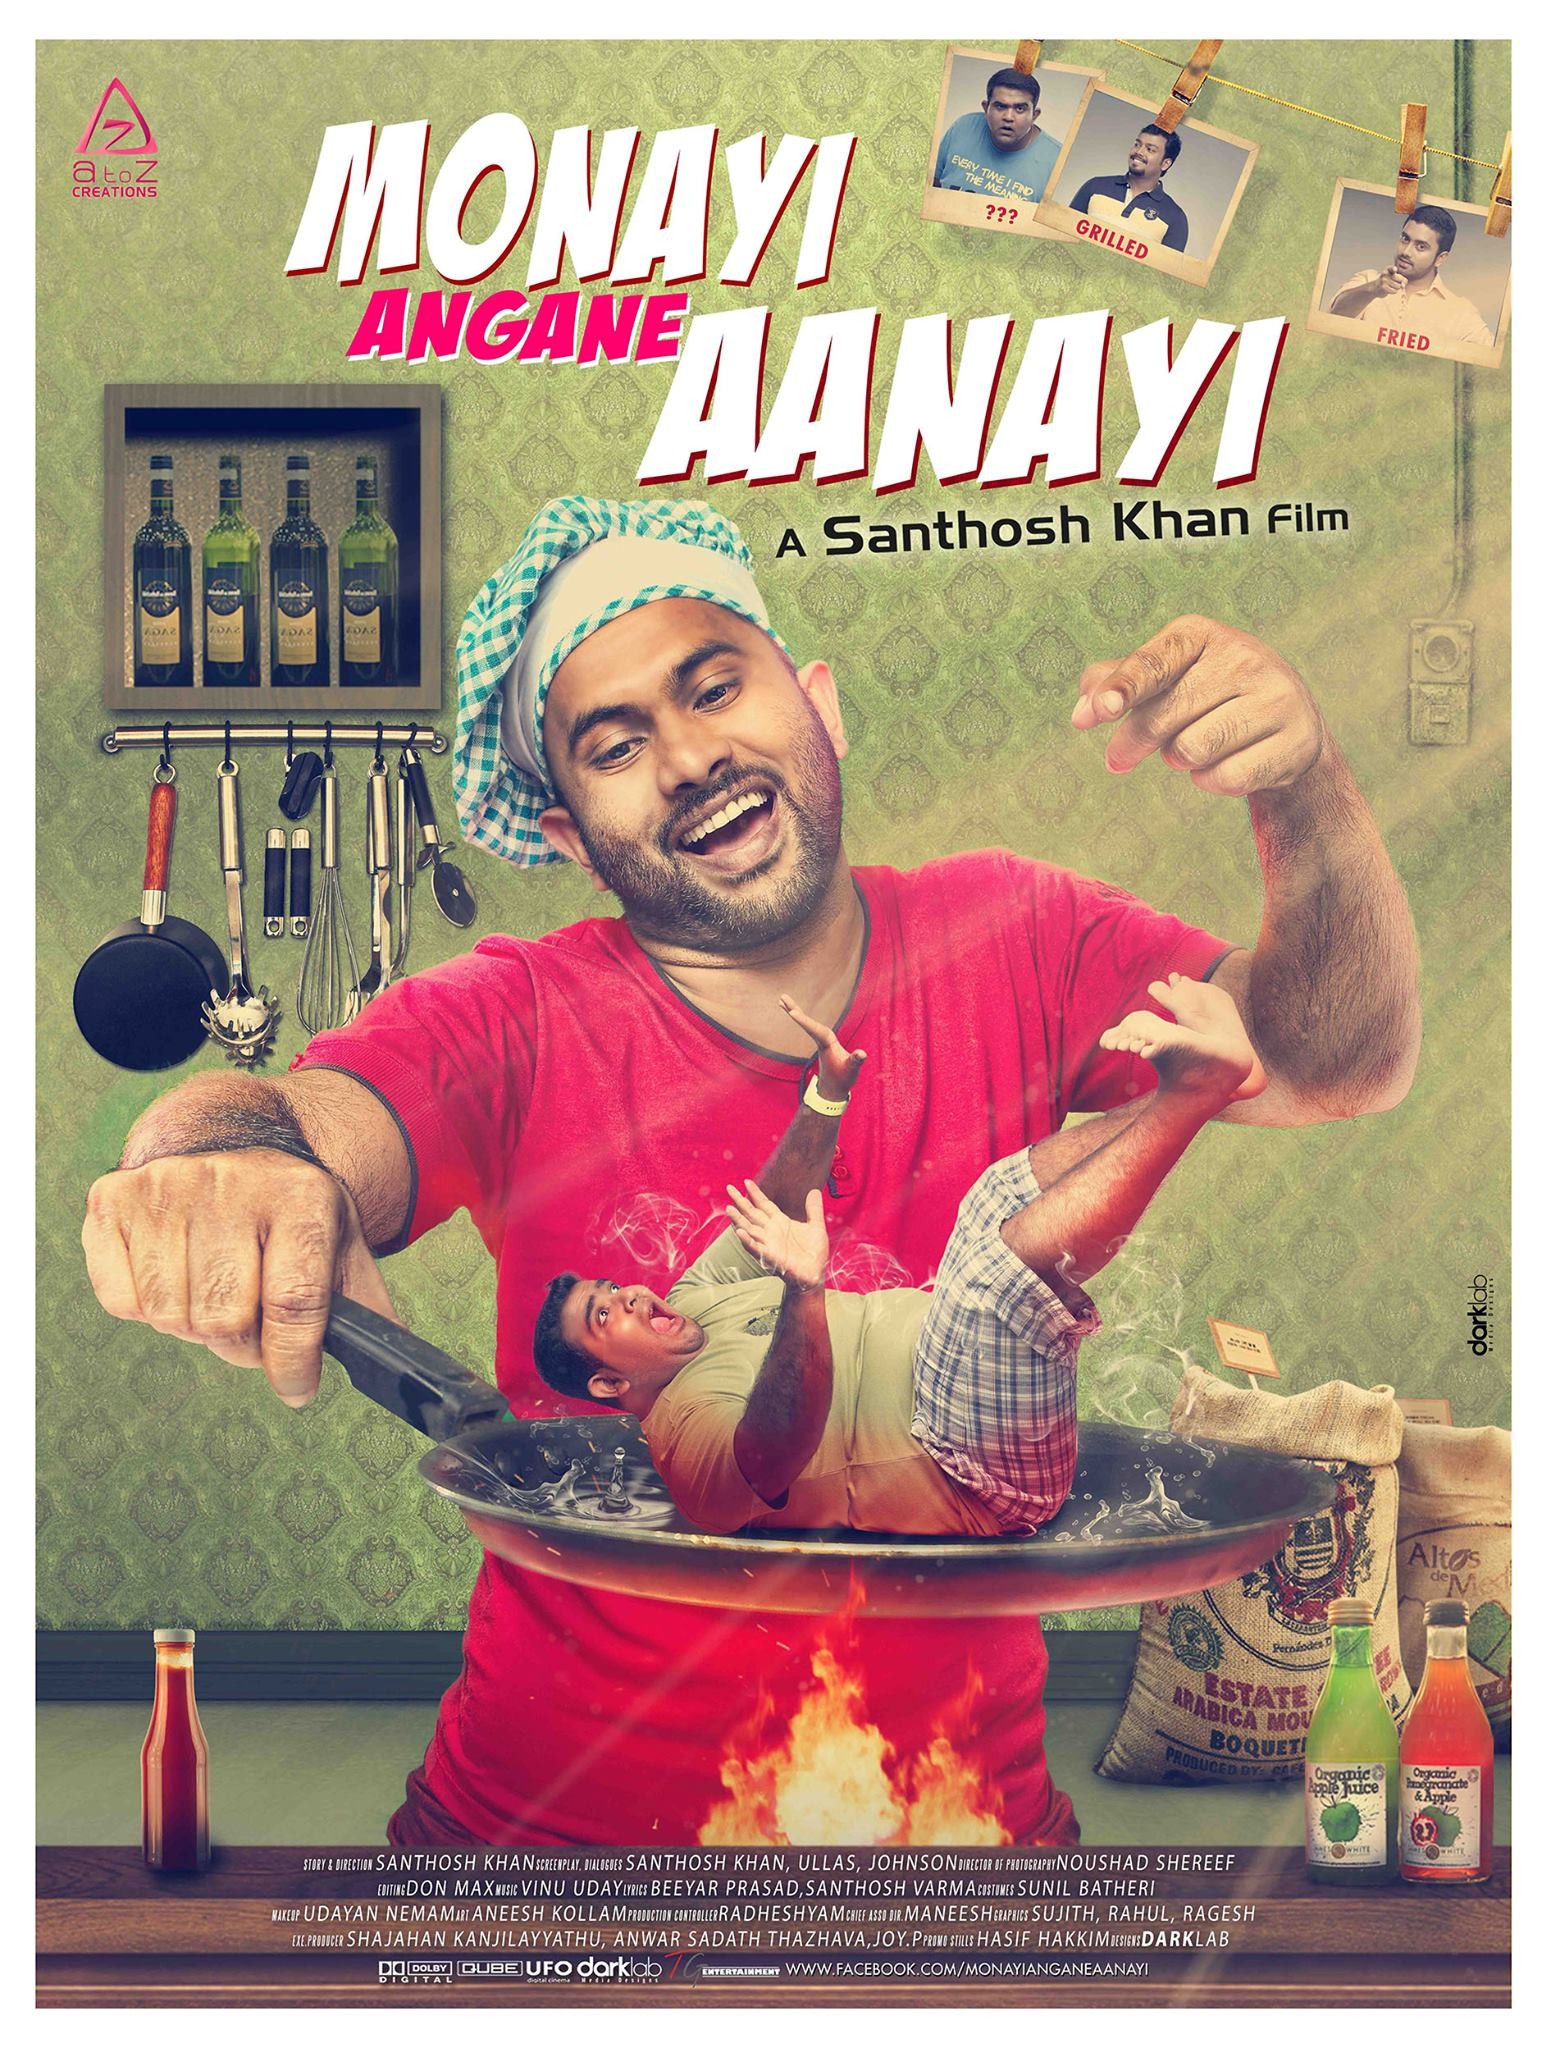 Mega Sized Movie Poster Image for Monayi angane aanayi (#3 of 3)